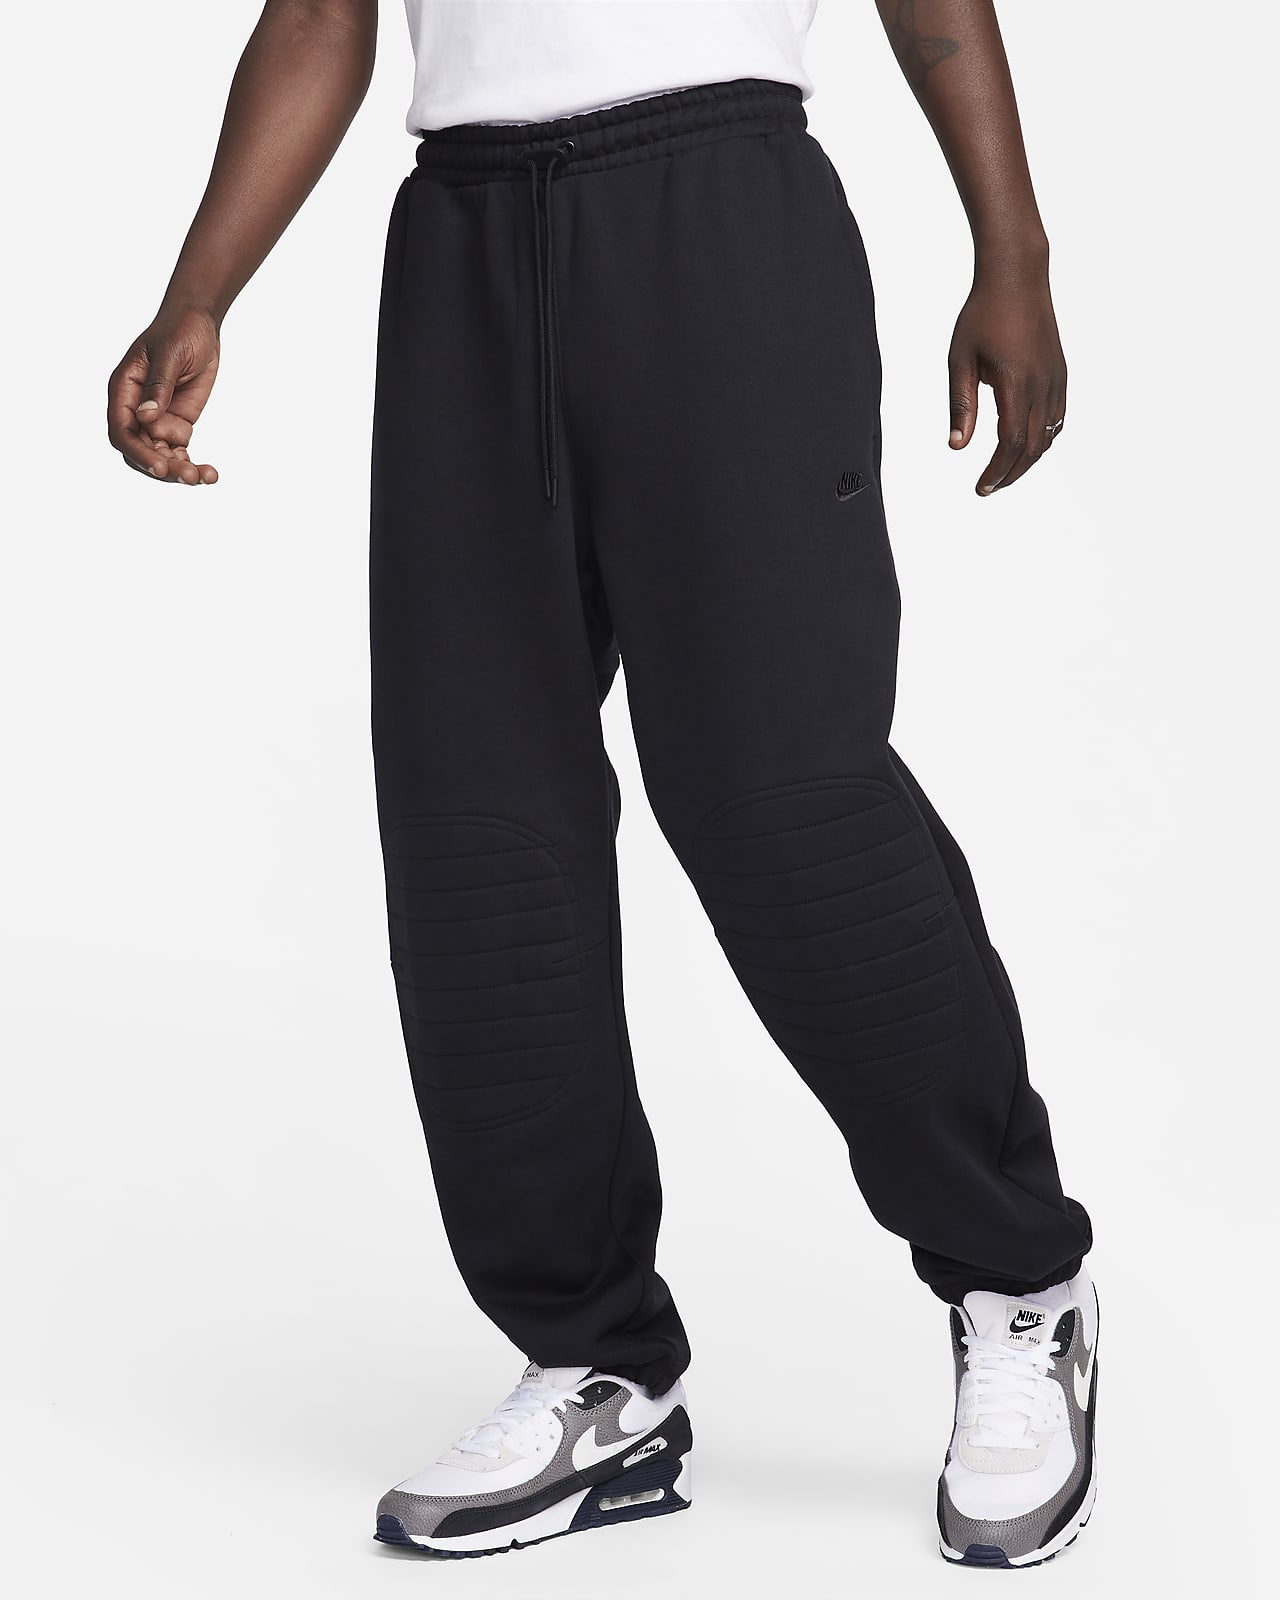 Nike Sportswear Therma-FIT Tech Pack Men's Repel Winterized Trousers. Nike  CA